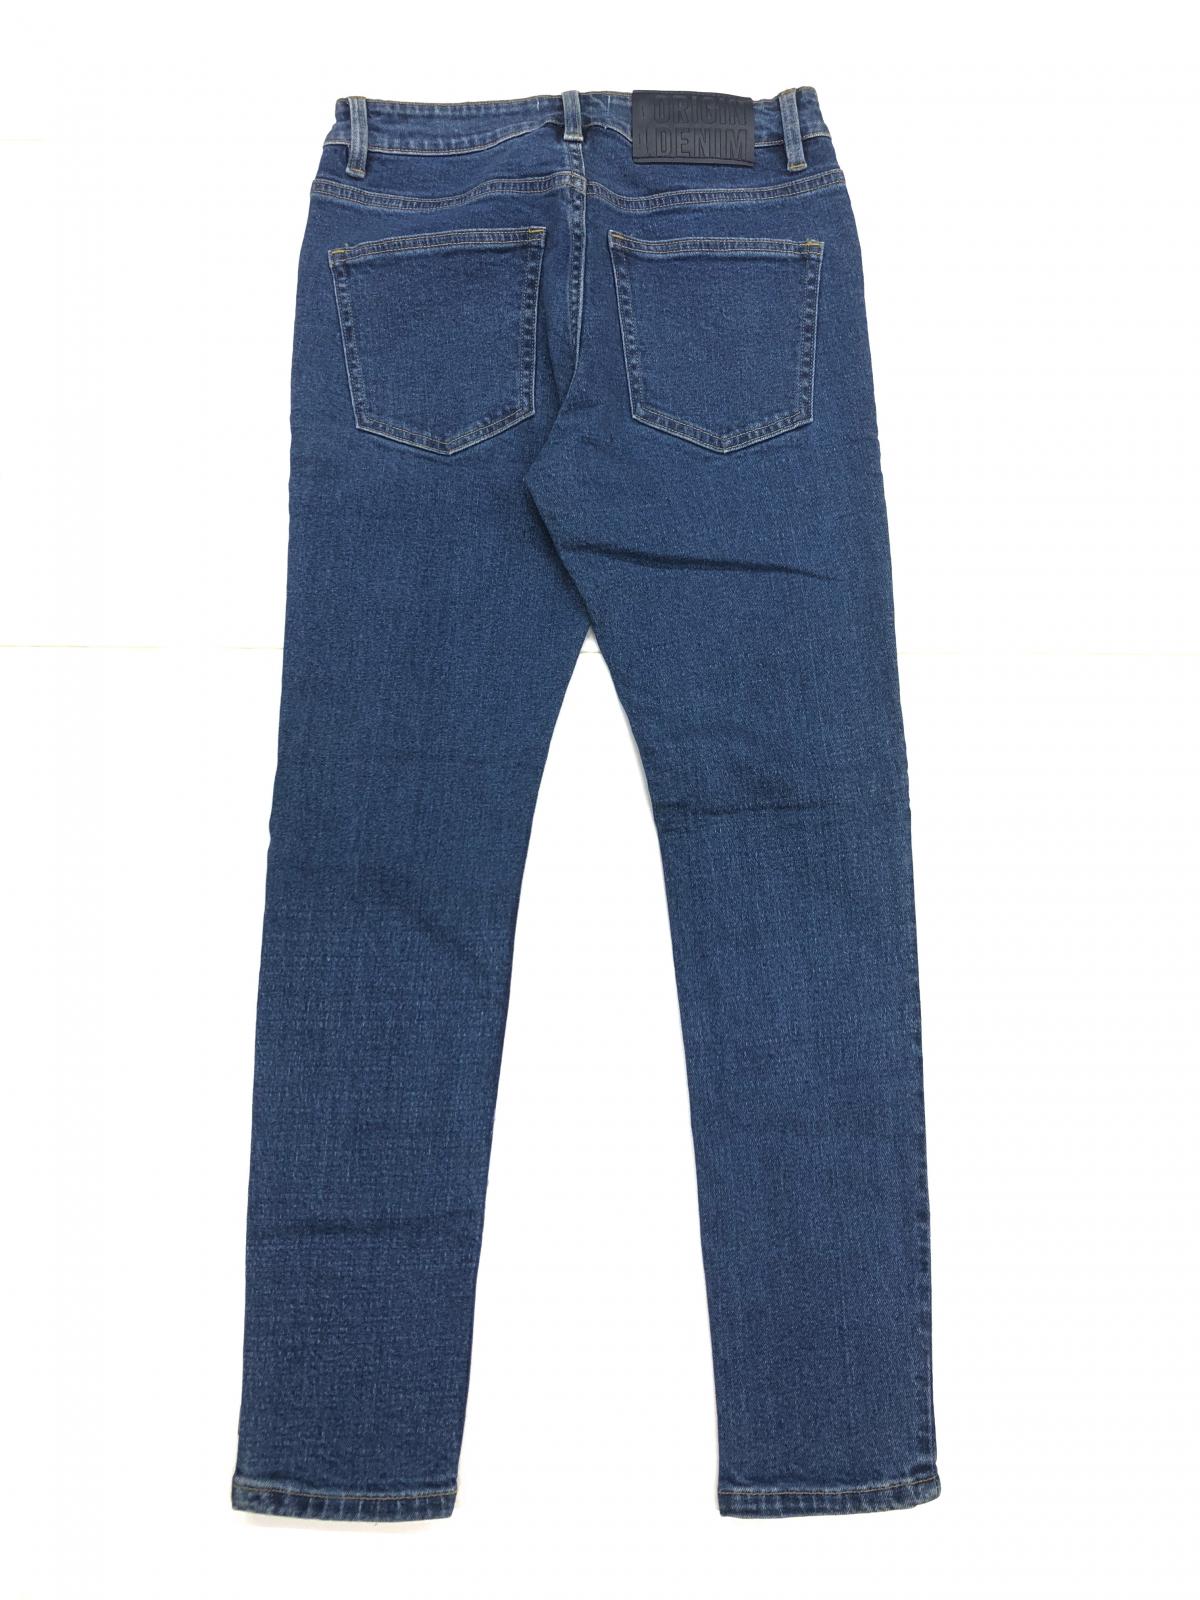 Men's Skinny Jeans  P0011 #1